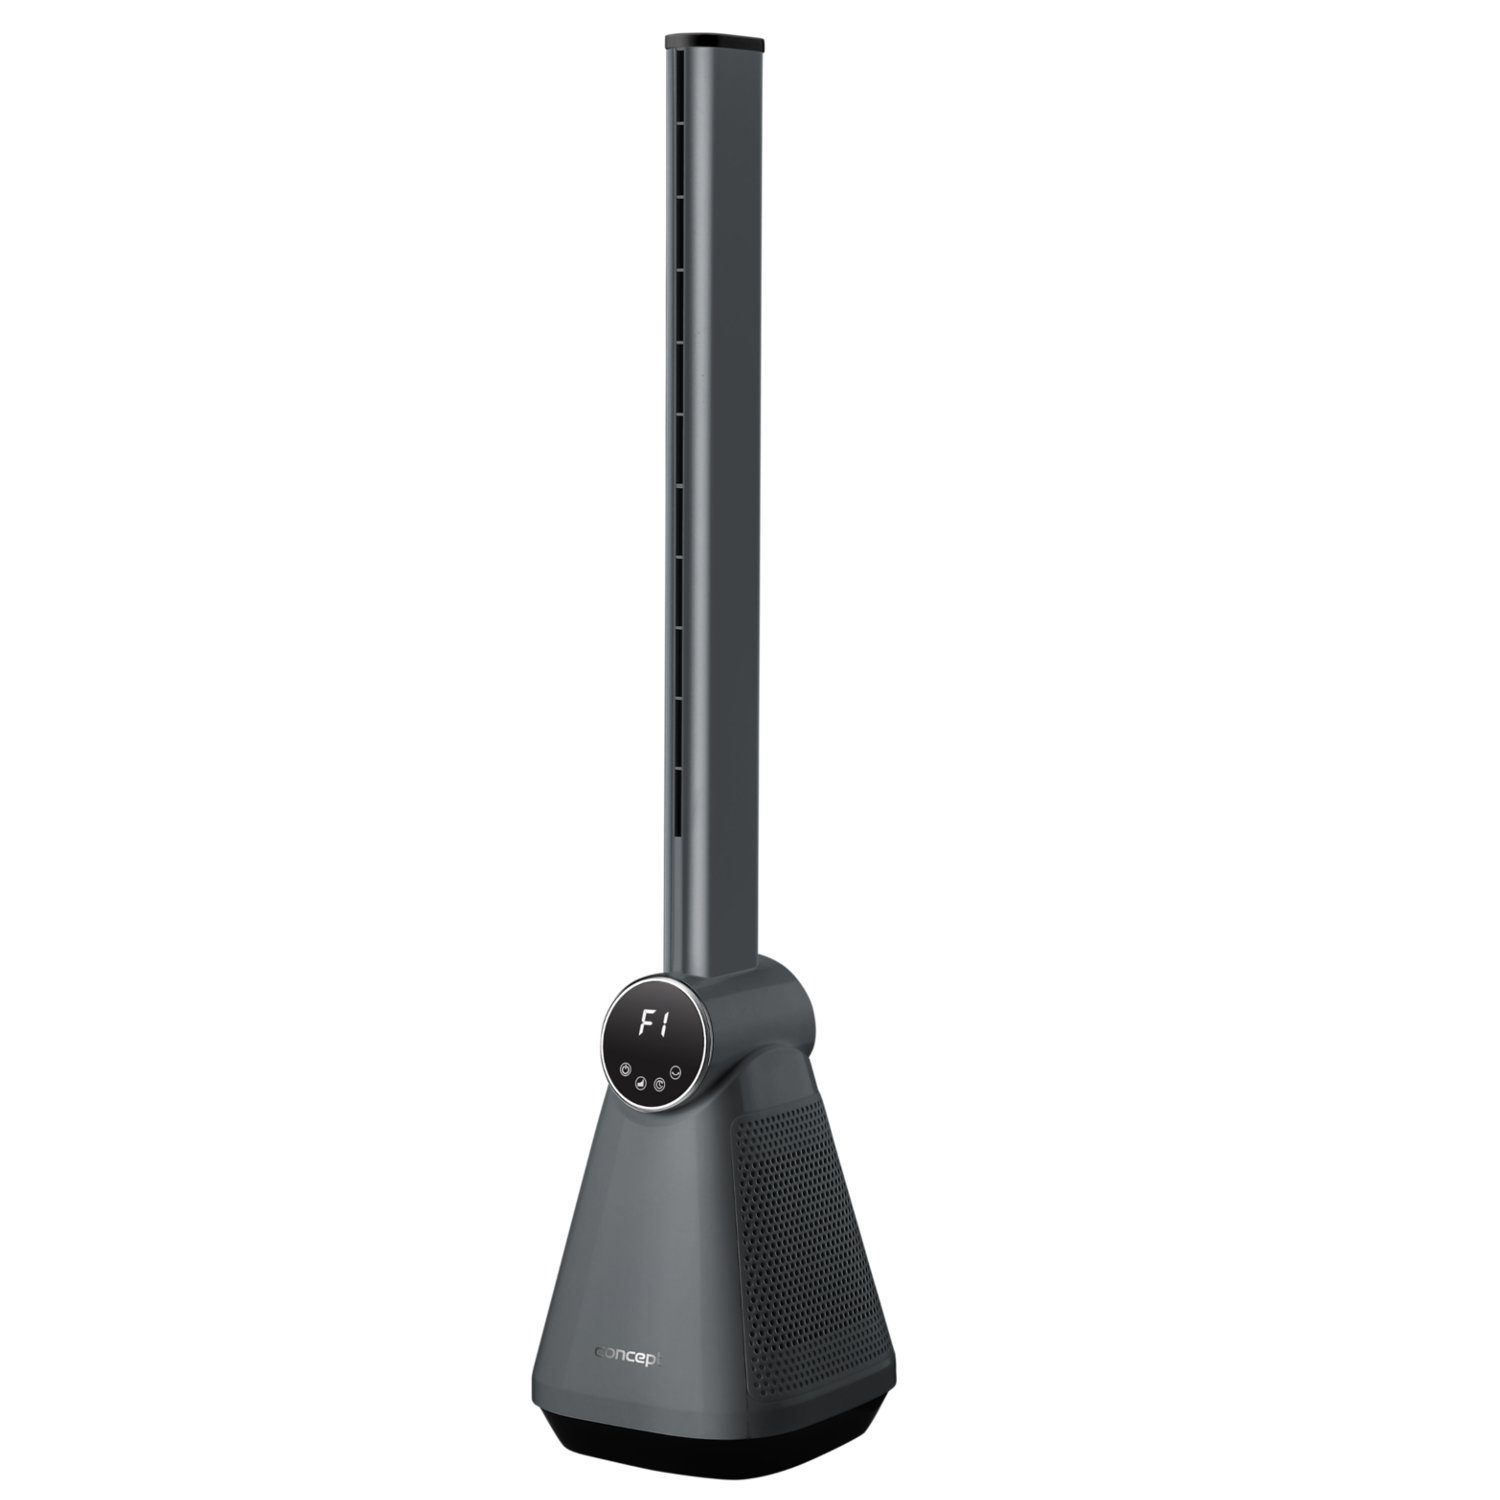 Turmventilator Concept W, Hz, V, 24x24x101cm 220-240 VS5130, 50 50